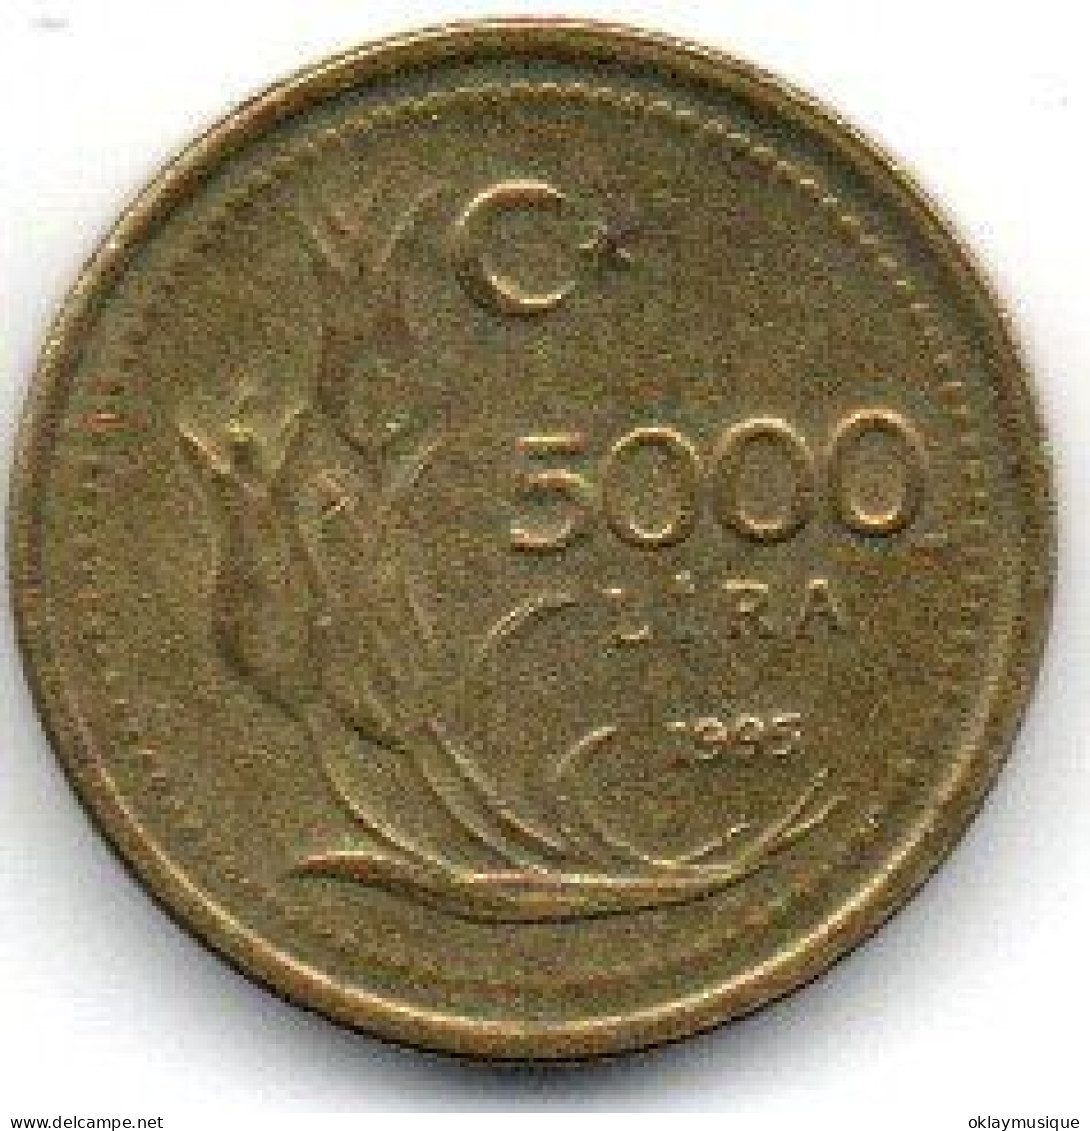 5000 Lira 1995 - Türkei